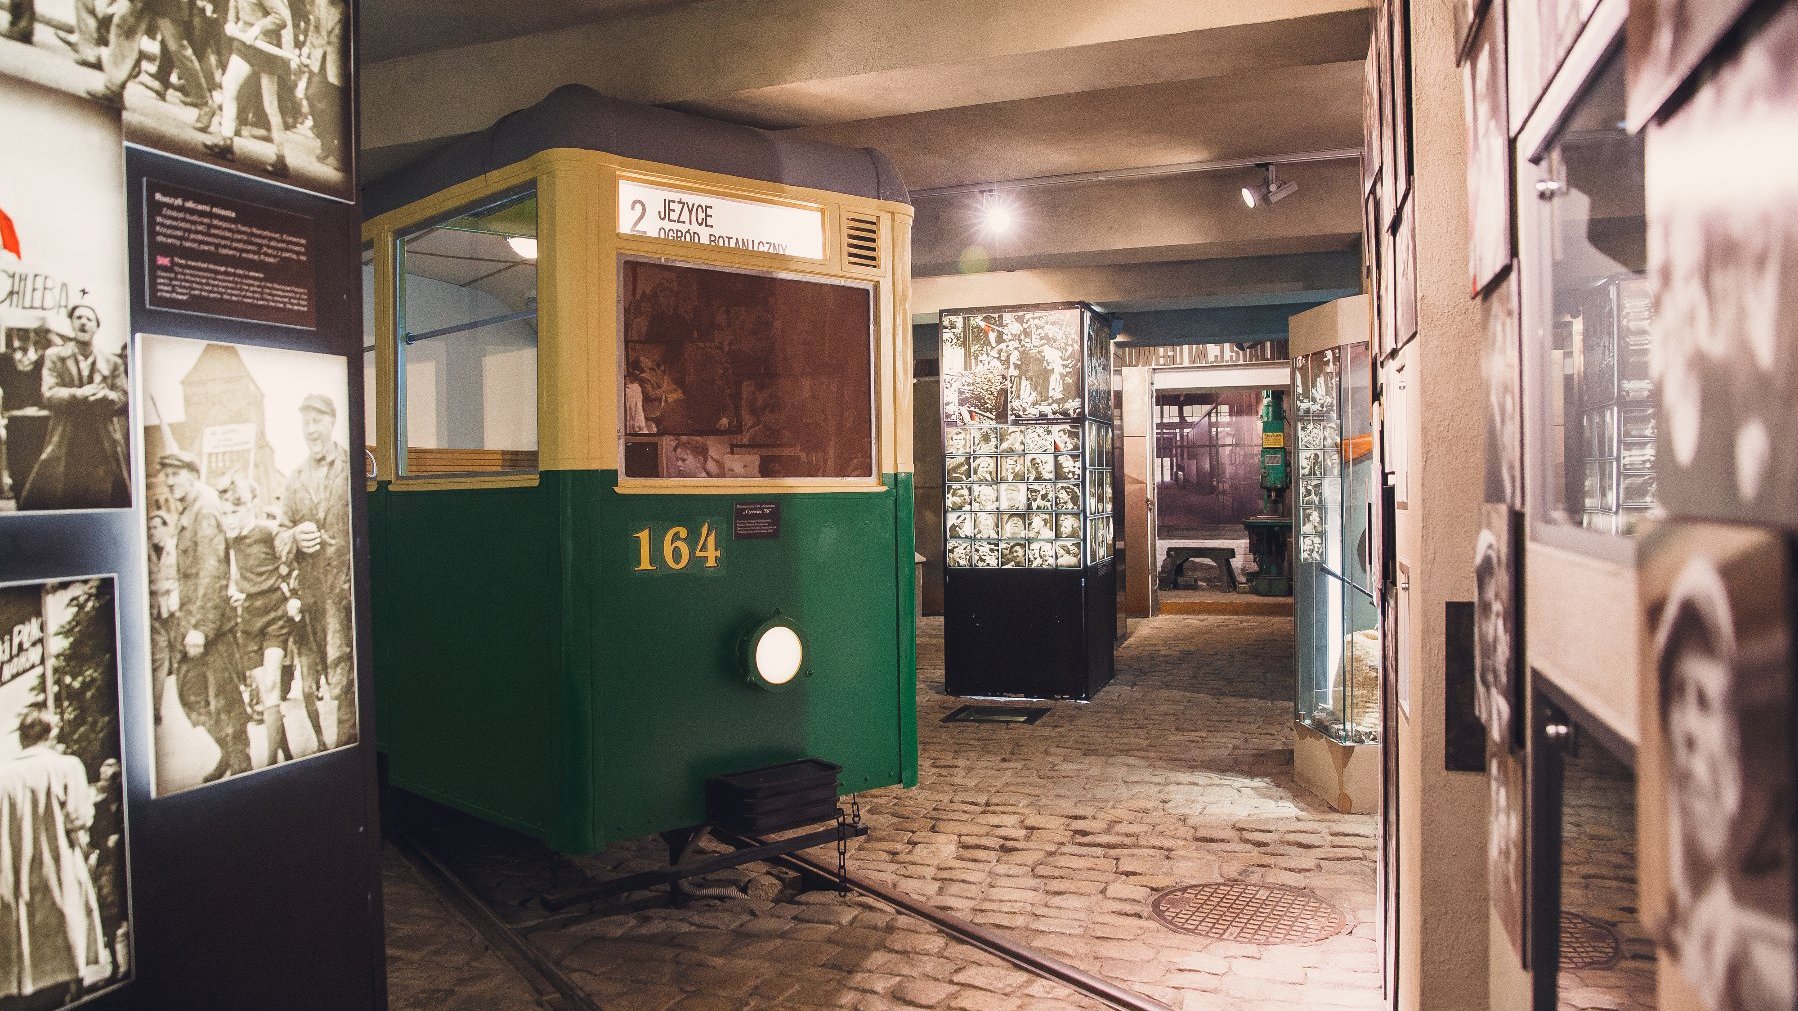 Część ekspozycji muzealnej Poznańskiego Czerwca 1956. W centrum stoi stary, żółto-zielony tramwaj z tablicą "2 Jeżyce. Ogród Botaniczny". Wokół tramwaju stoją filary ze zdjęciami z Poznańskiego Czerwca.